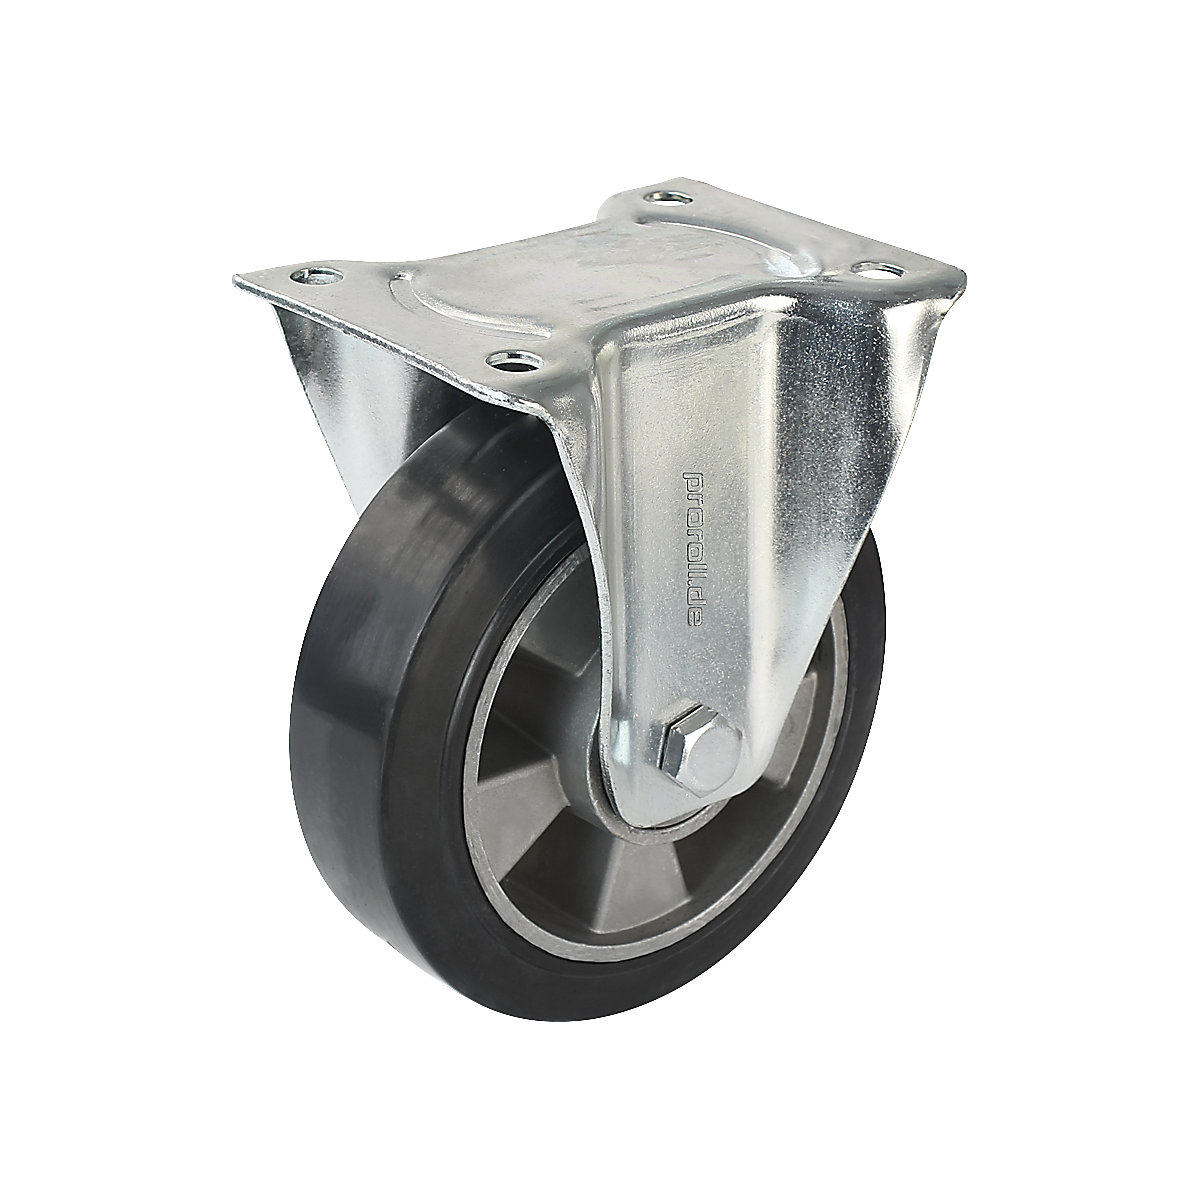 Elastični kotač od pune gume, u crnoj boji – Proroll